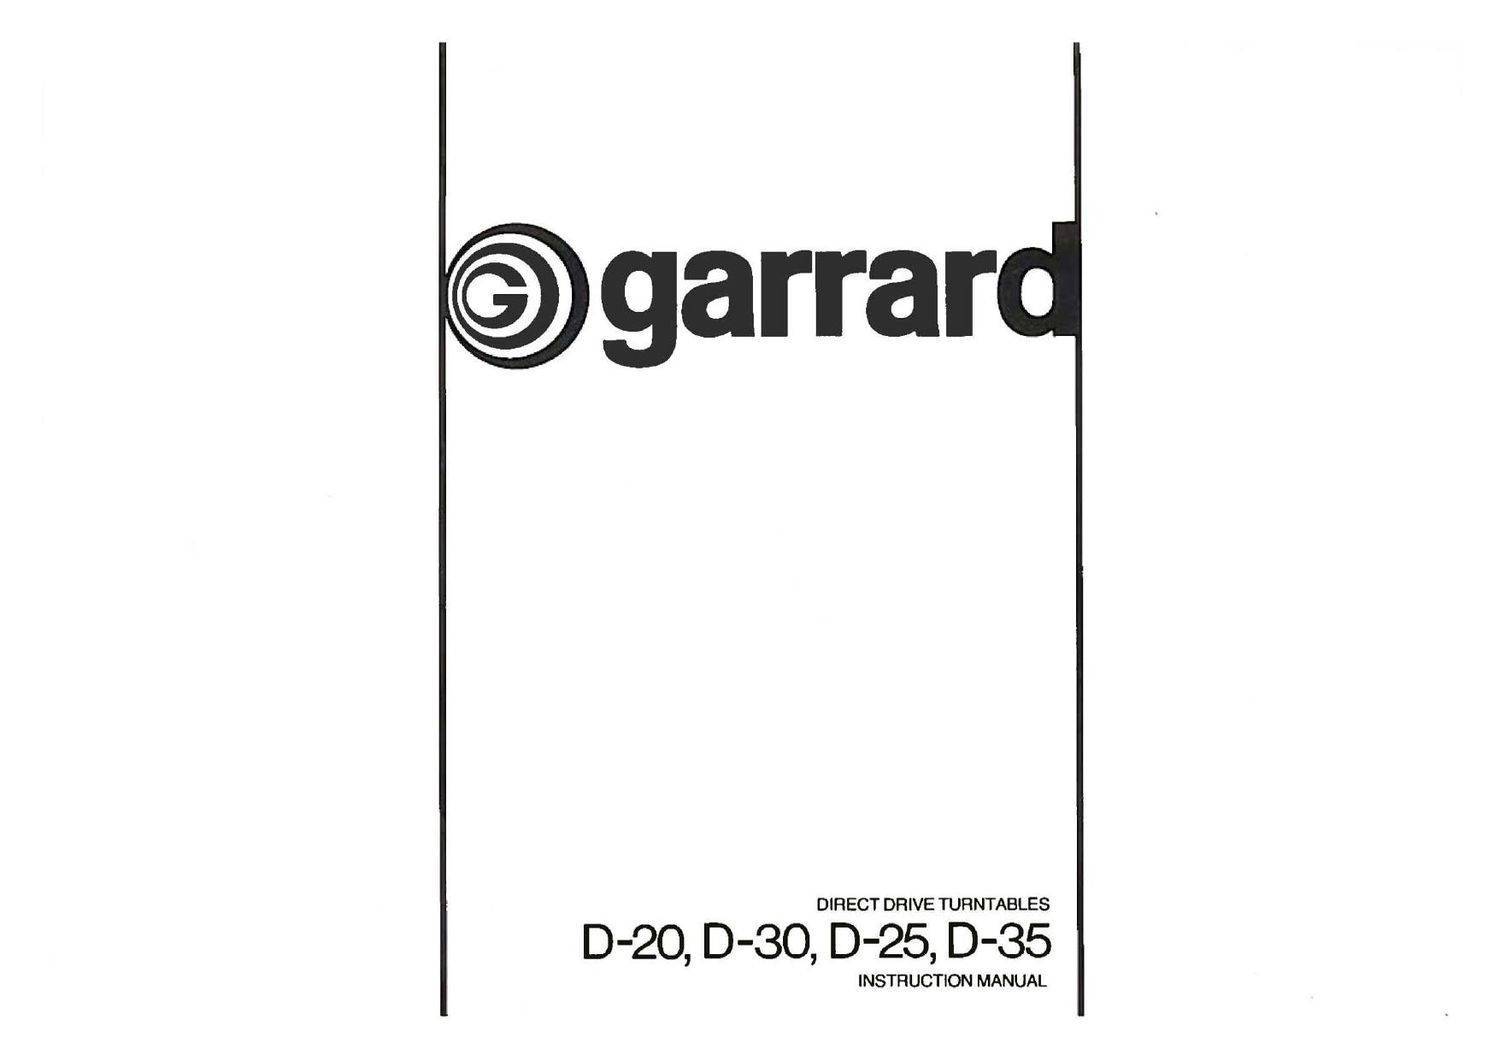 Garrard D-20